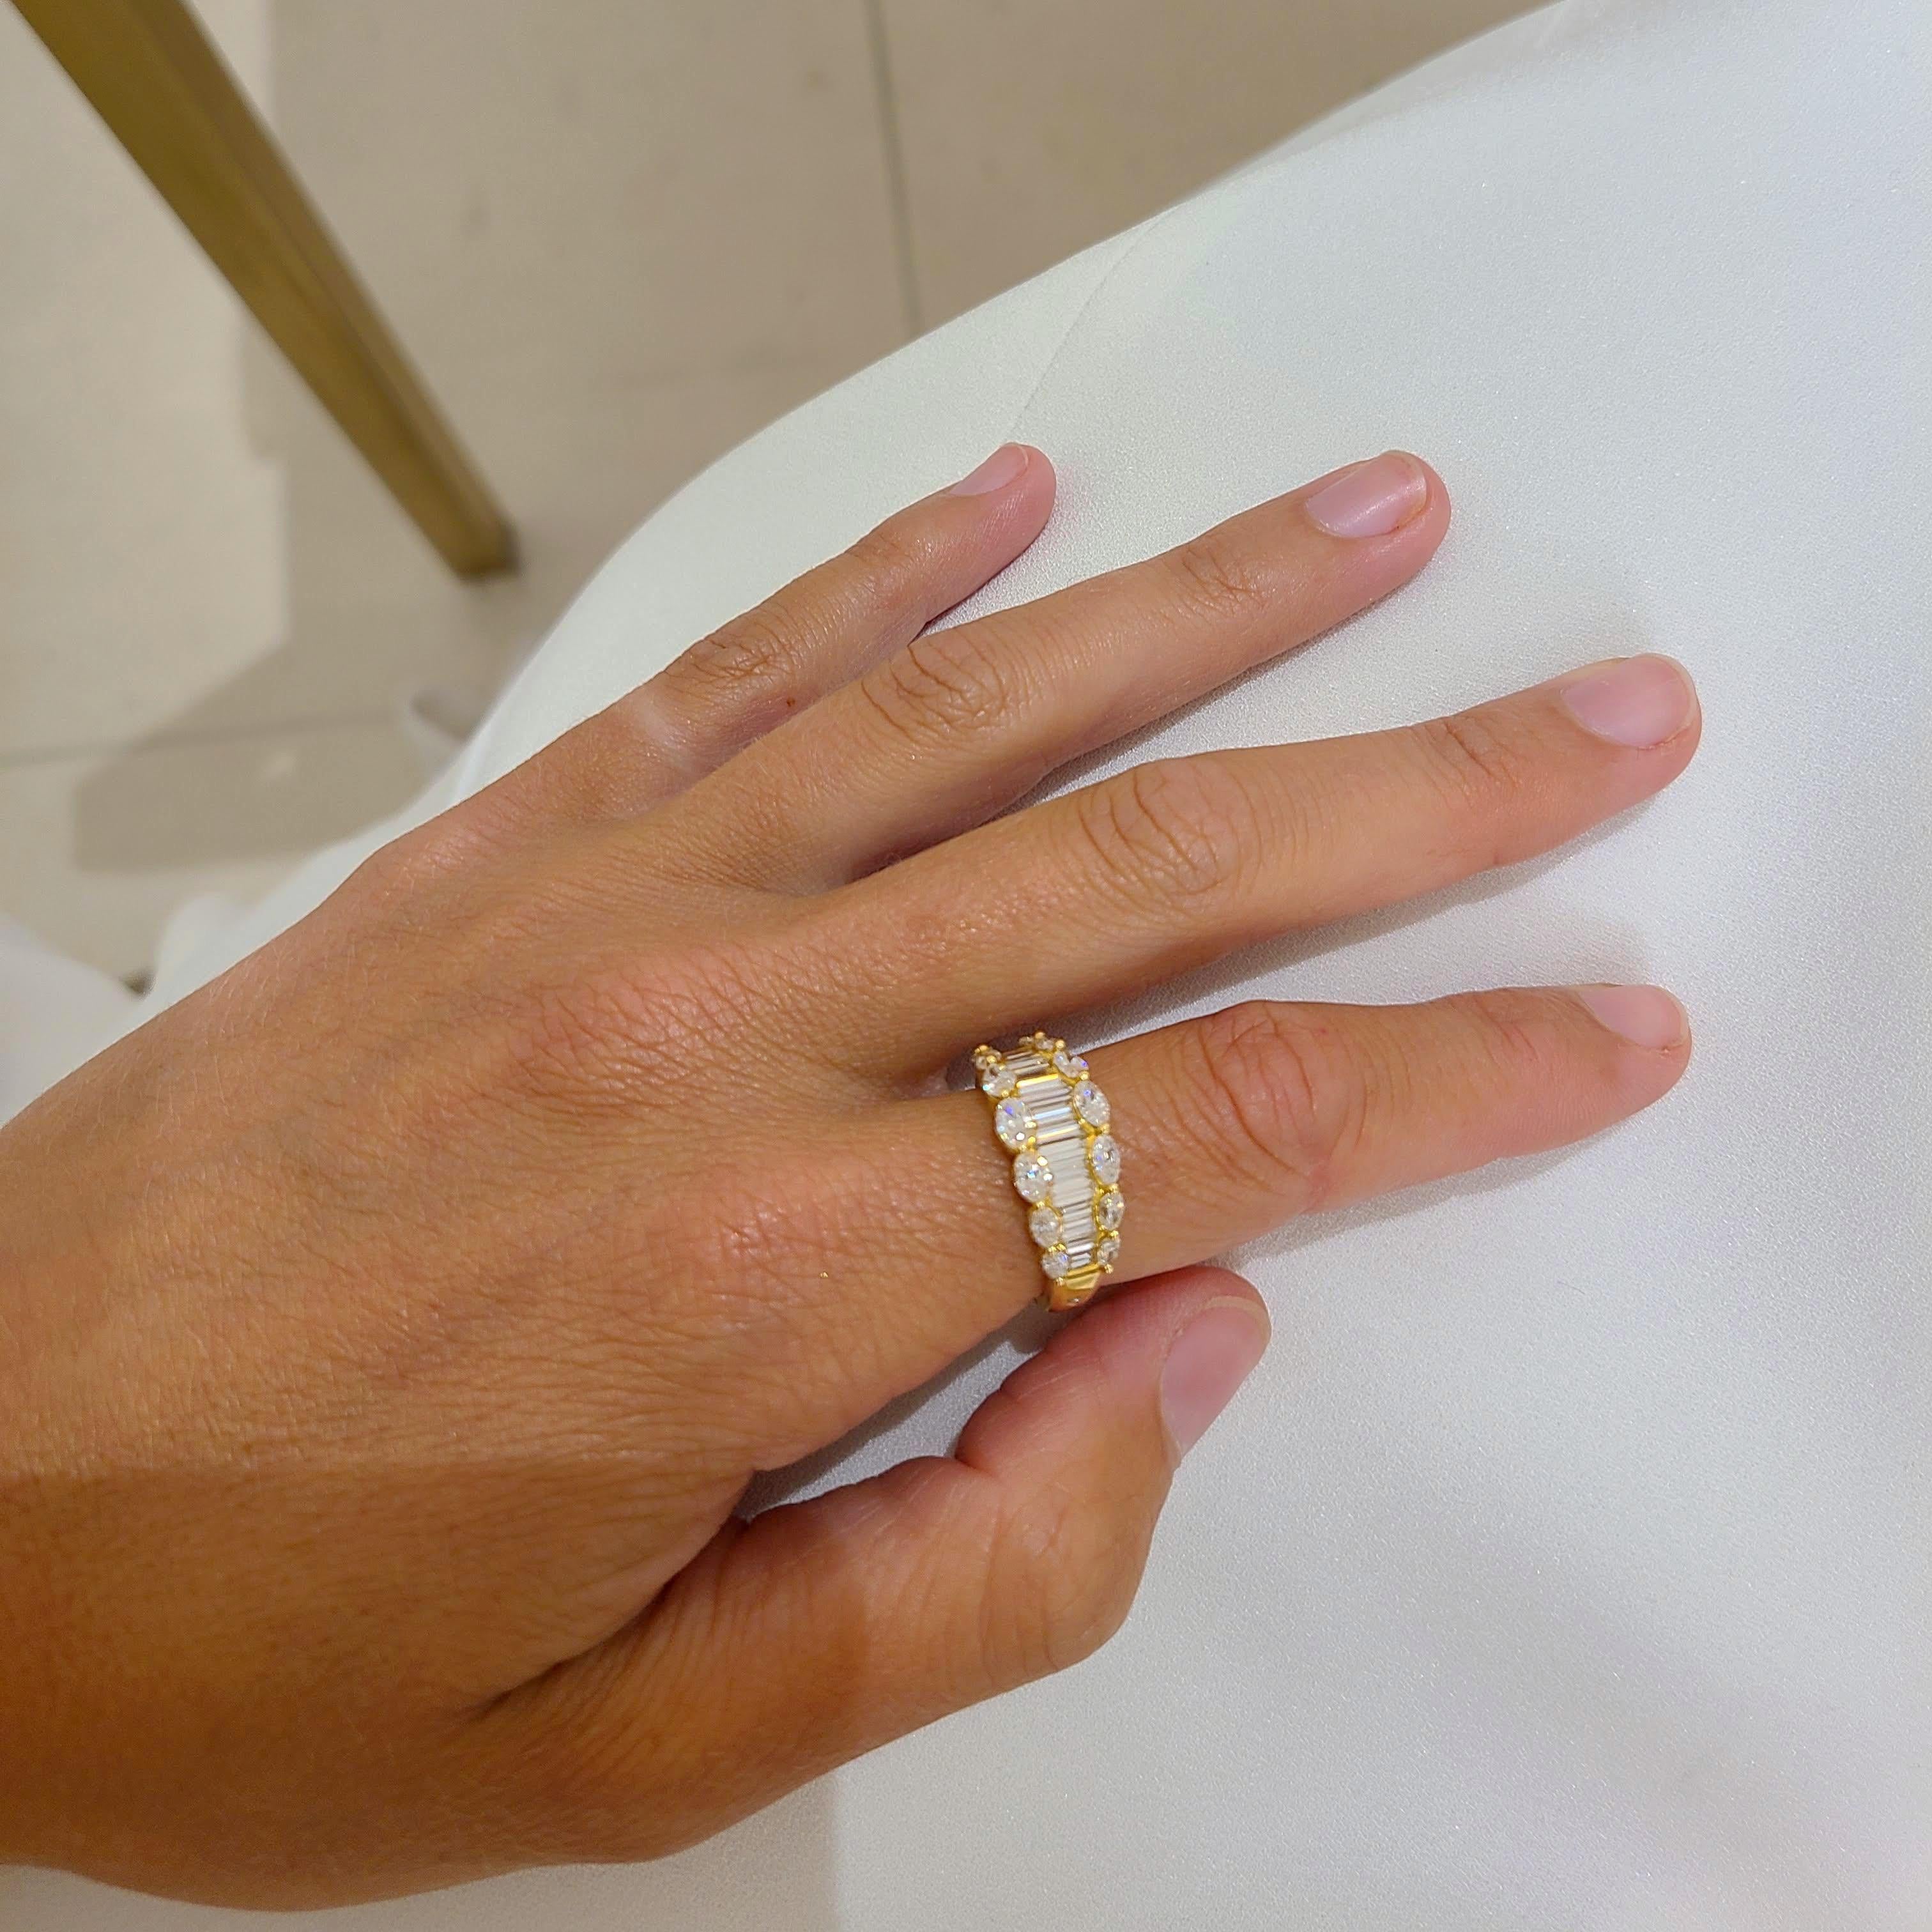 Schöner Ring aus 18 Karat Gelbgold, besetzt mit Diamanten im Baguette- und Marquise-Schliff. Die Baguettes sind vertikal und die Marquise horizontal gefasst. Die Diamanten verjüngen sich leicht und sorgen so für ein schönes Aussehen am Finger. Es